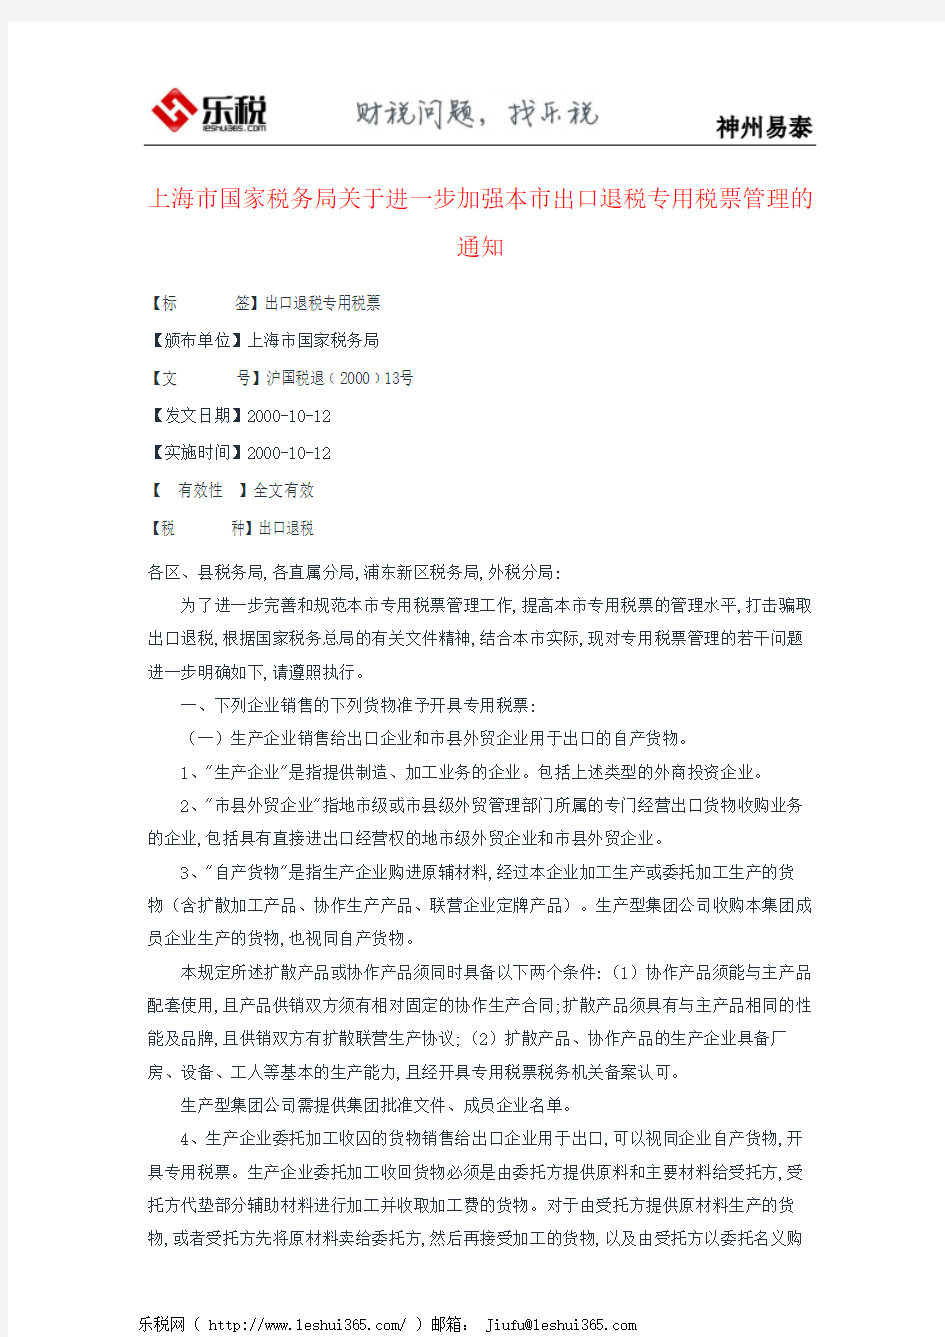 上海市国家税务局关于进一步加强本市出口退税专用税票管理的通知